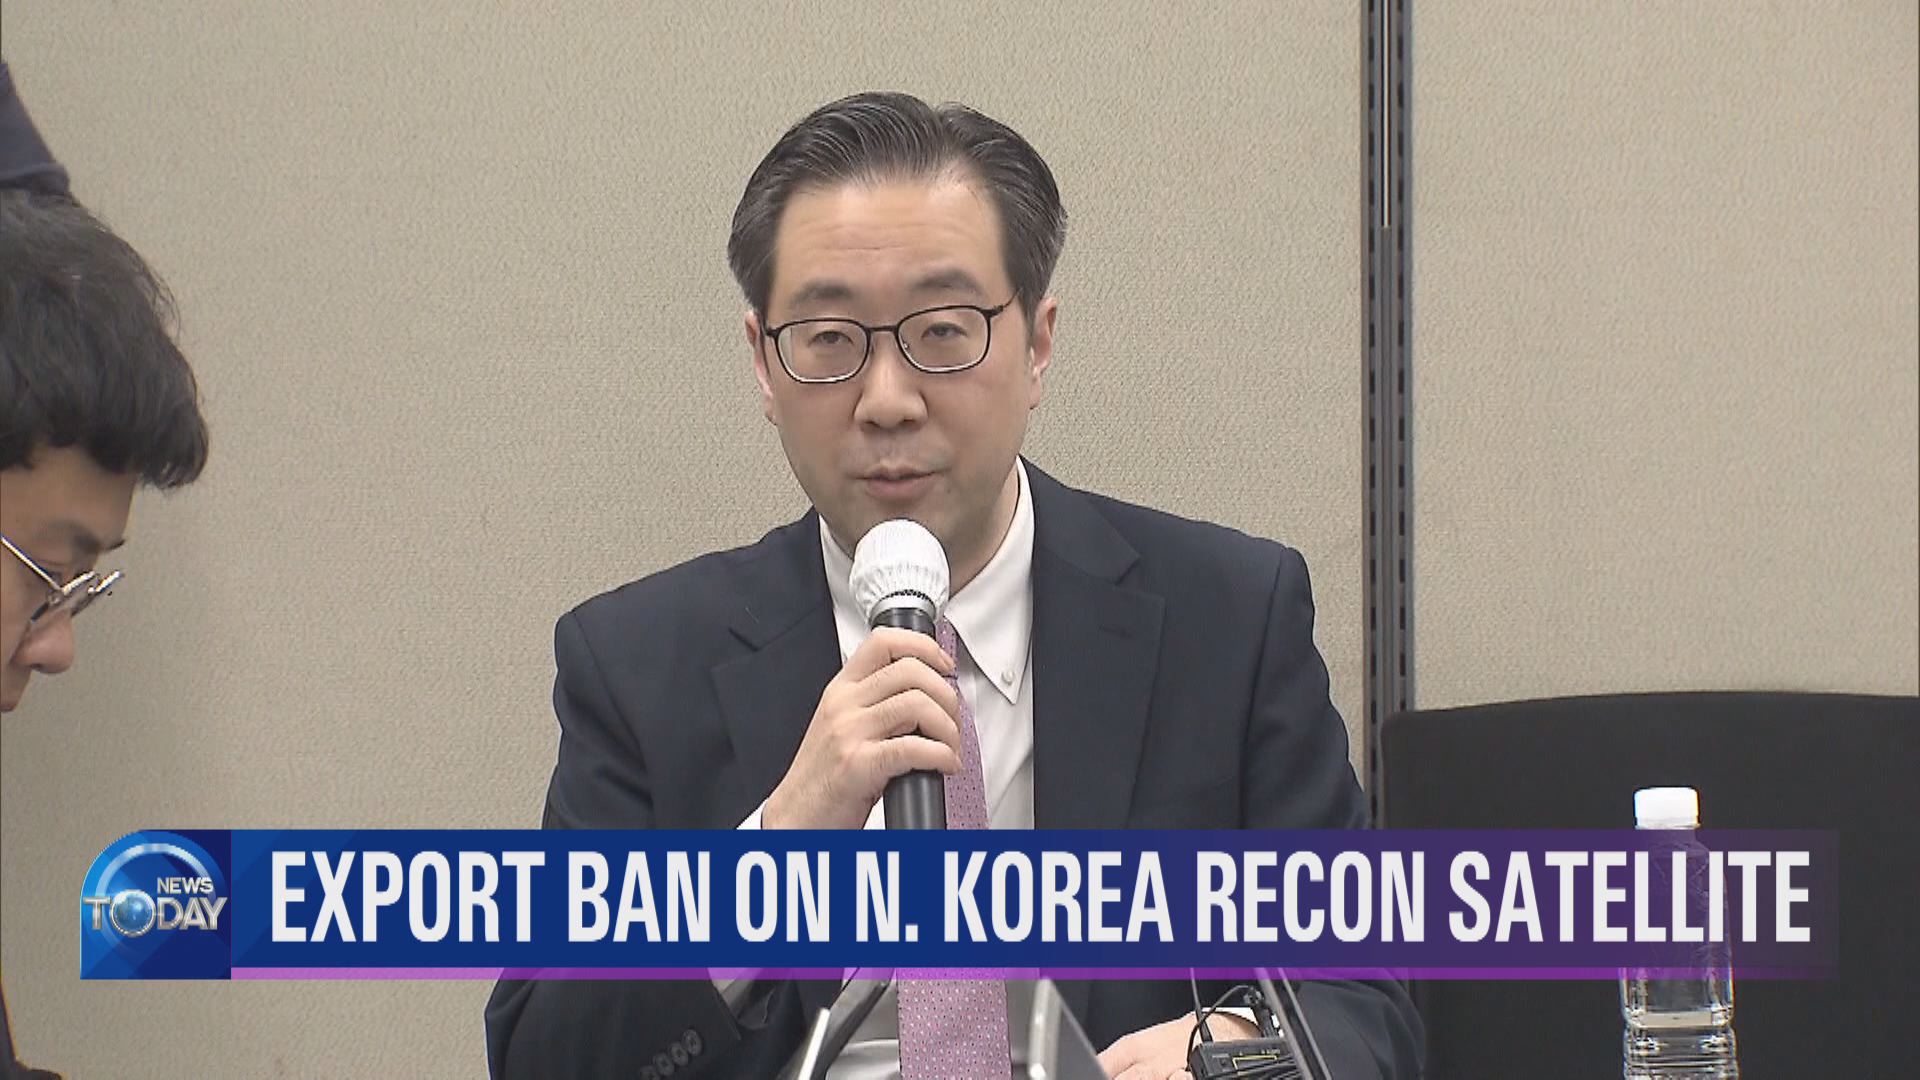 EXPORT BAN ON N. KOREA RECON SATELLITE